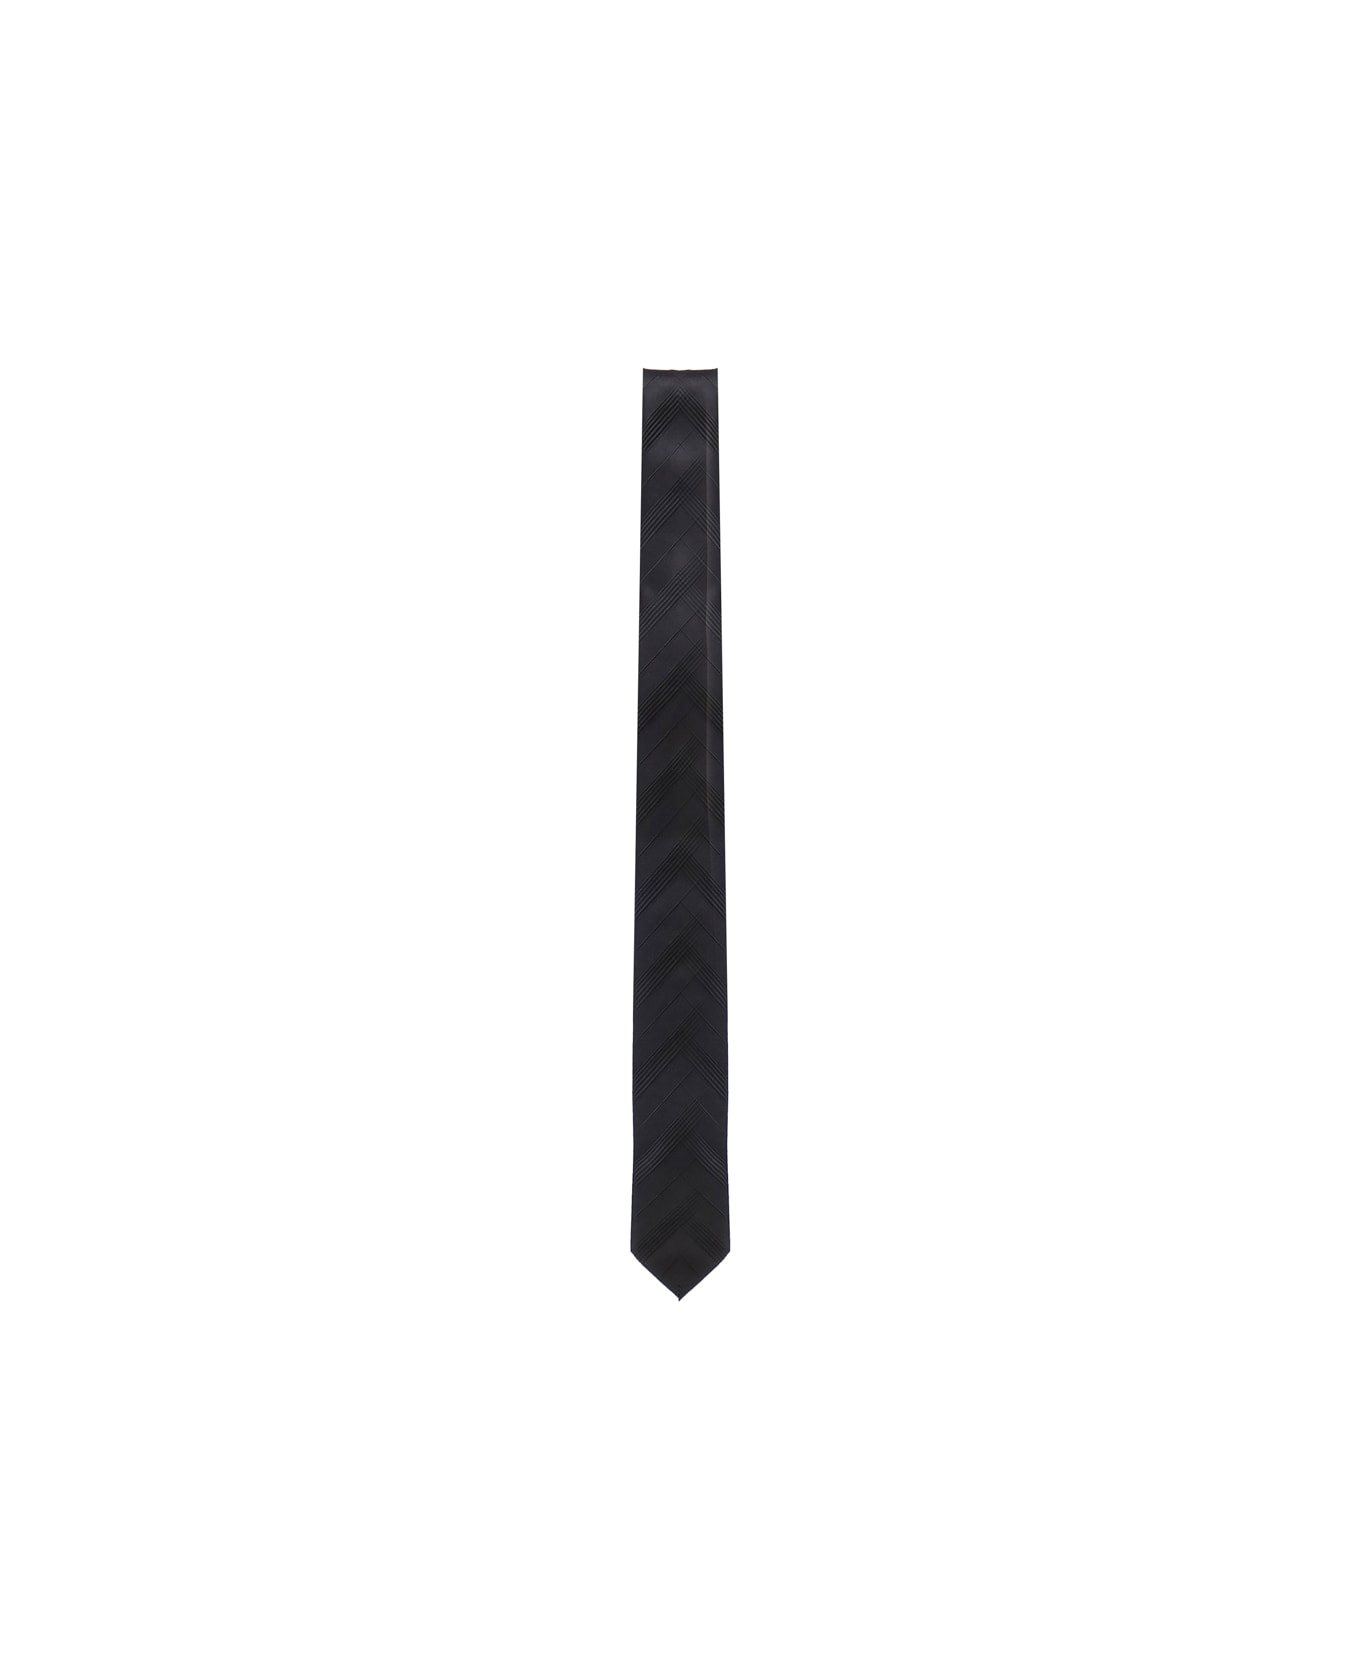 Saint Laurent Striped Tie - BLACK/BLACK